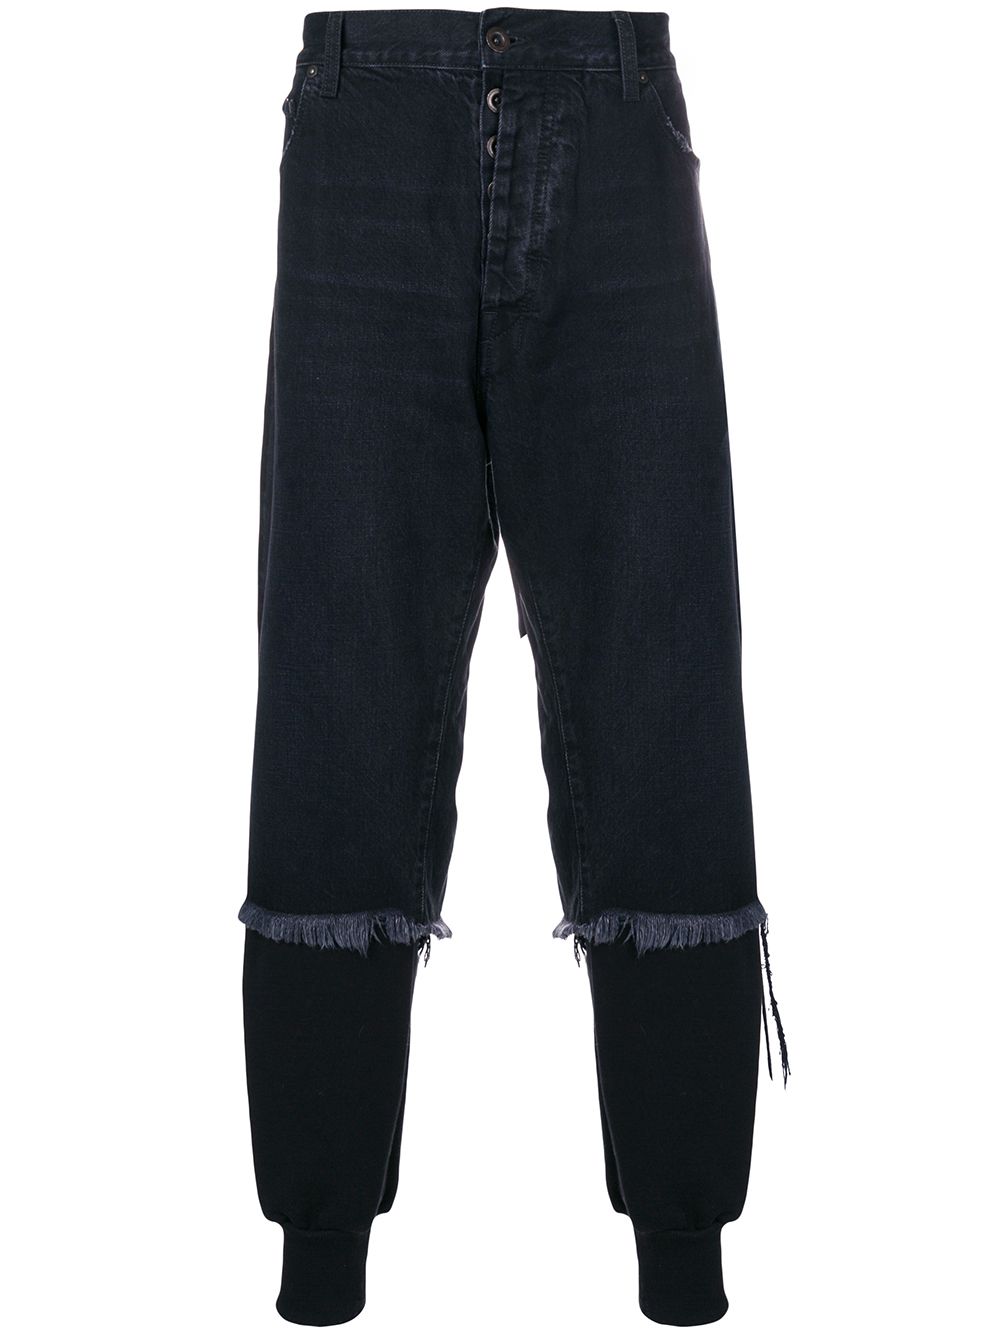 UNRAVEL PROJECT спортивные брюки с джинсовым верхним слоем